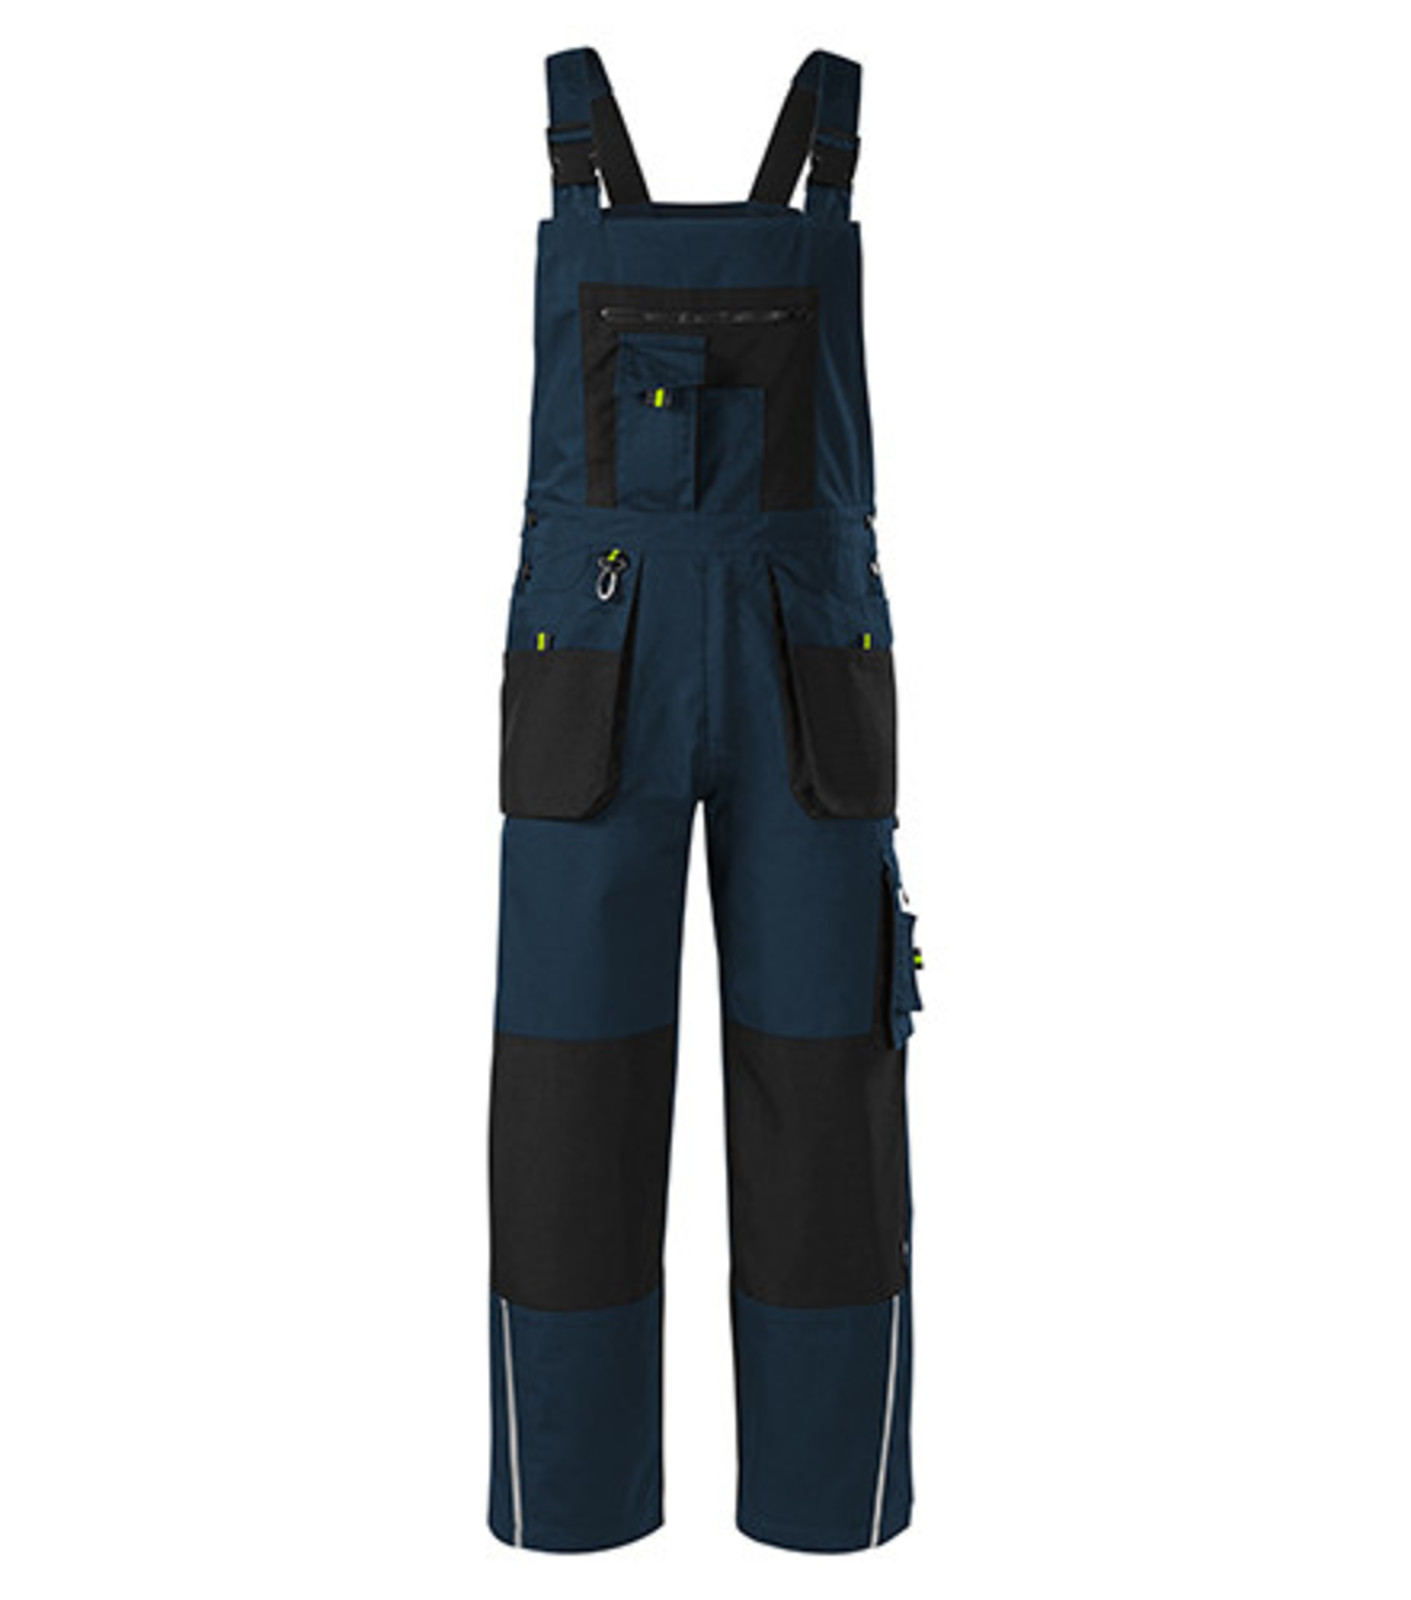 Montérkové nohavice s náprsenkou Adler Ranger W04 - veľkosť: 48-50, farba: tmavo modrá